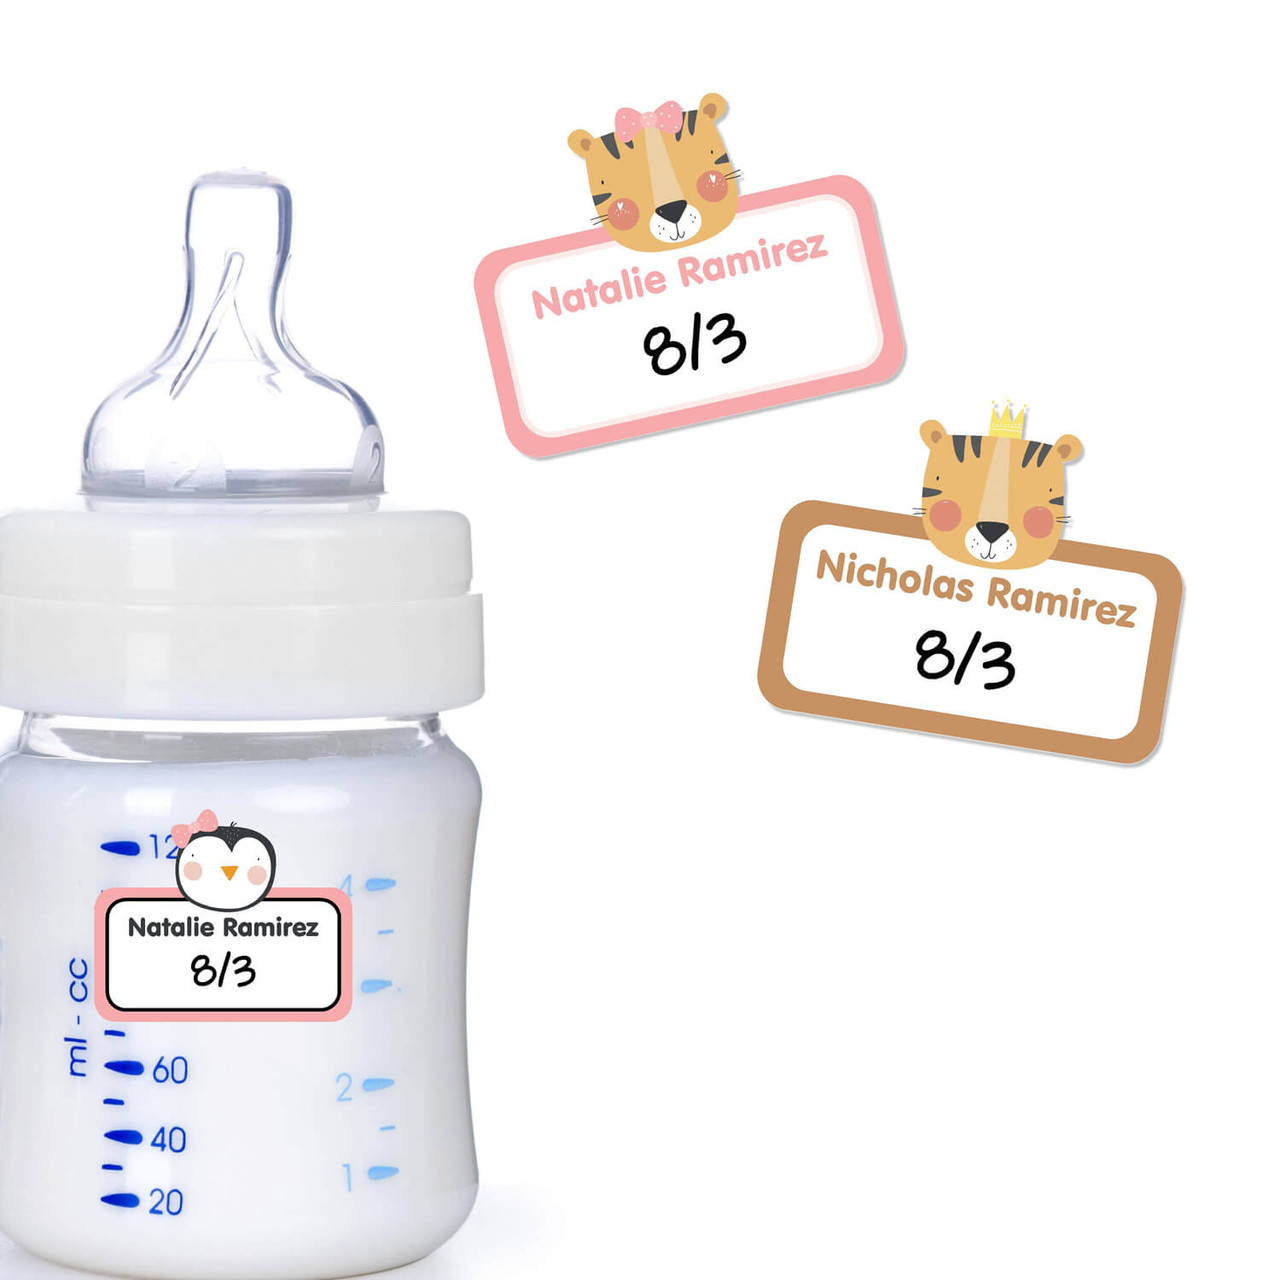 Baby Bottle Labels: Labels for Baby Bottles